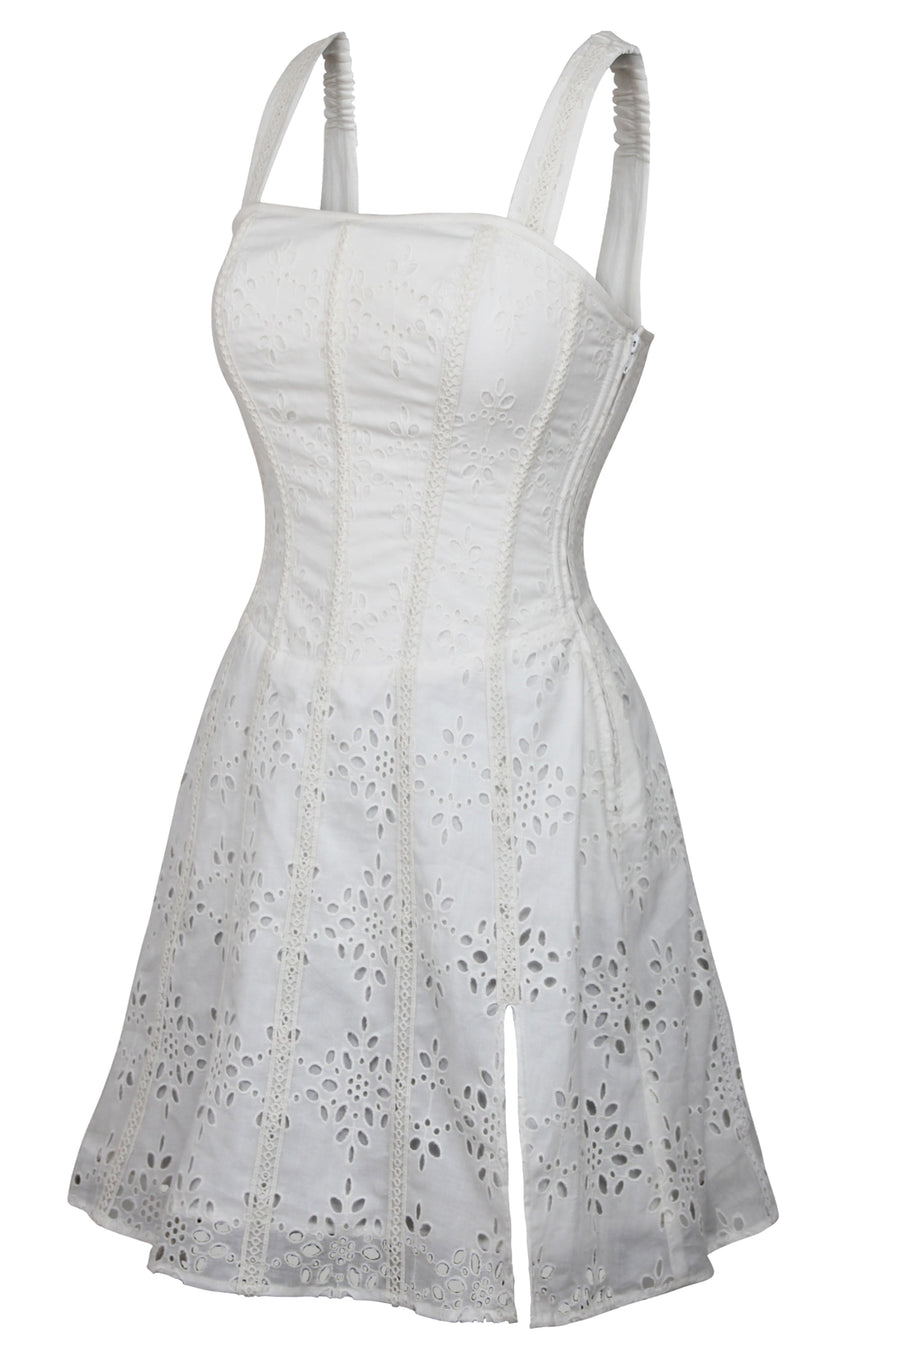 Linen Corset Skirt “Snow White”  Corset skirt, Historical dresses